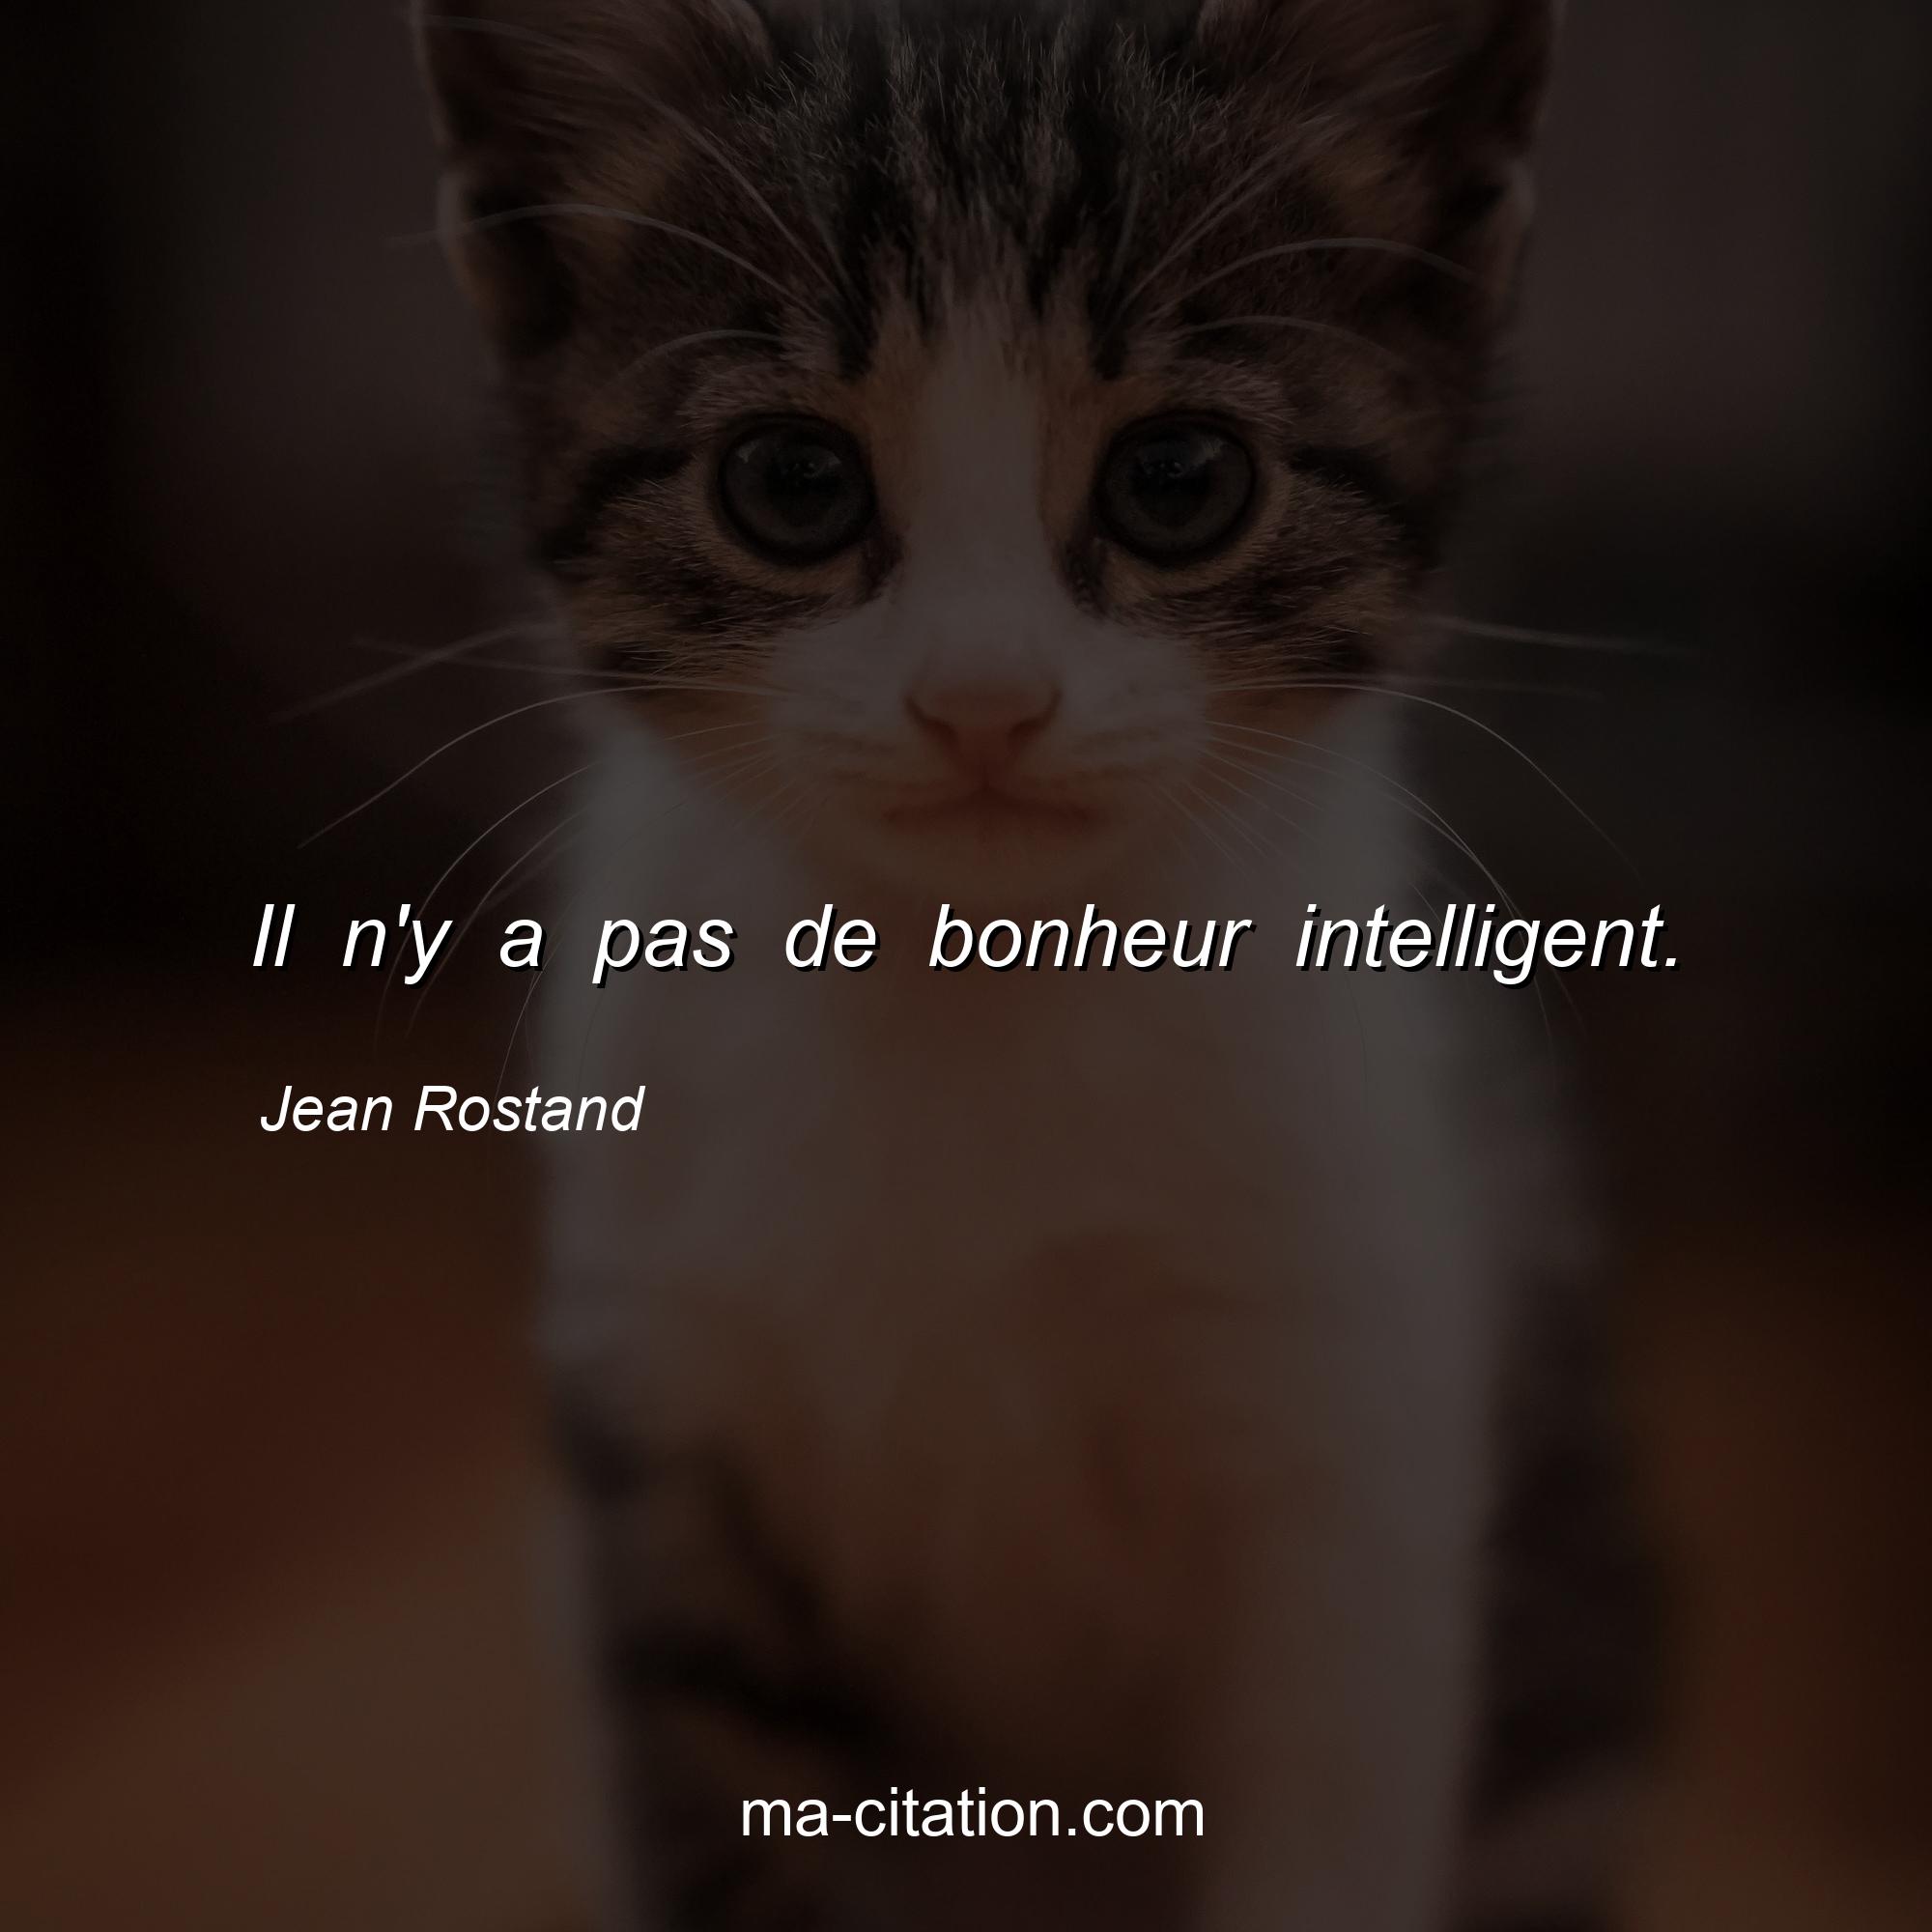 Jean Rostand : Il n'y a pas de bonheur intelligent.